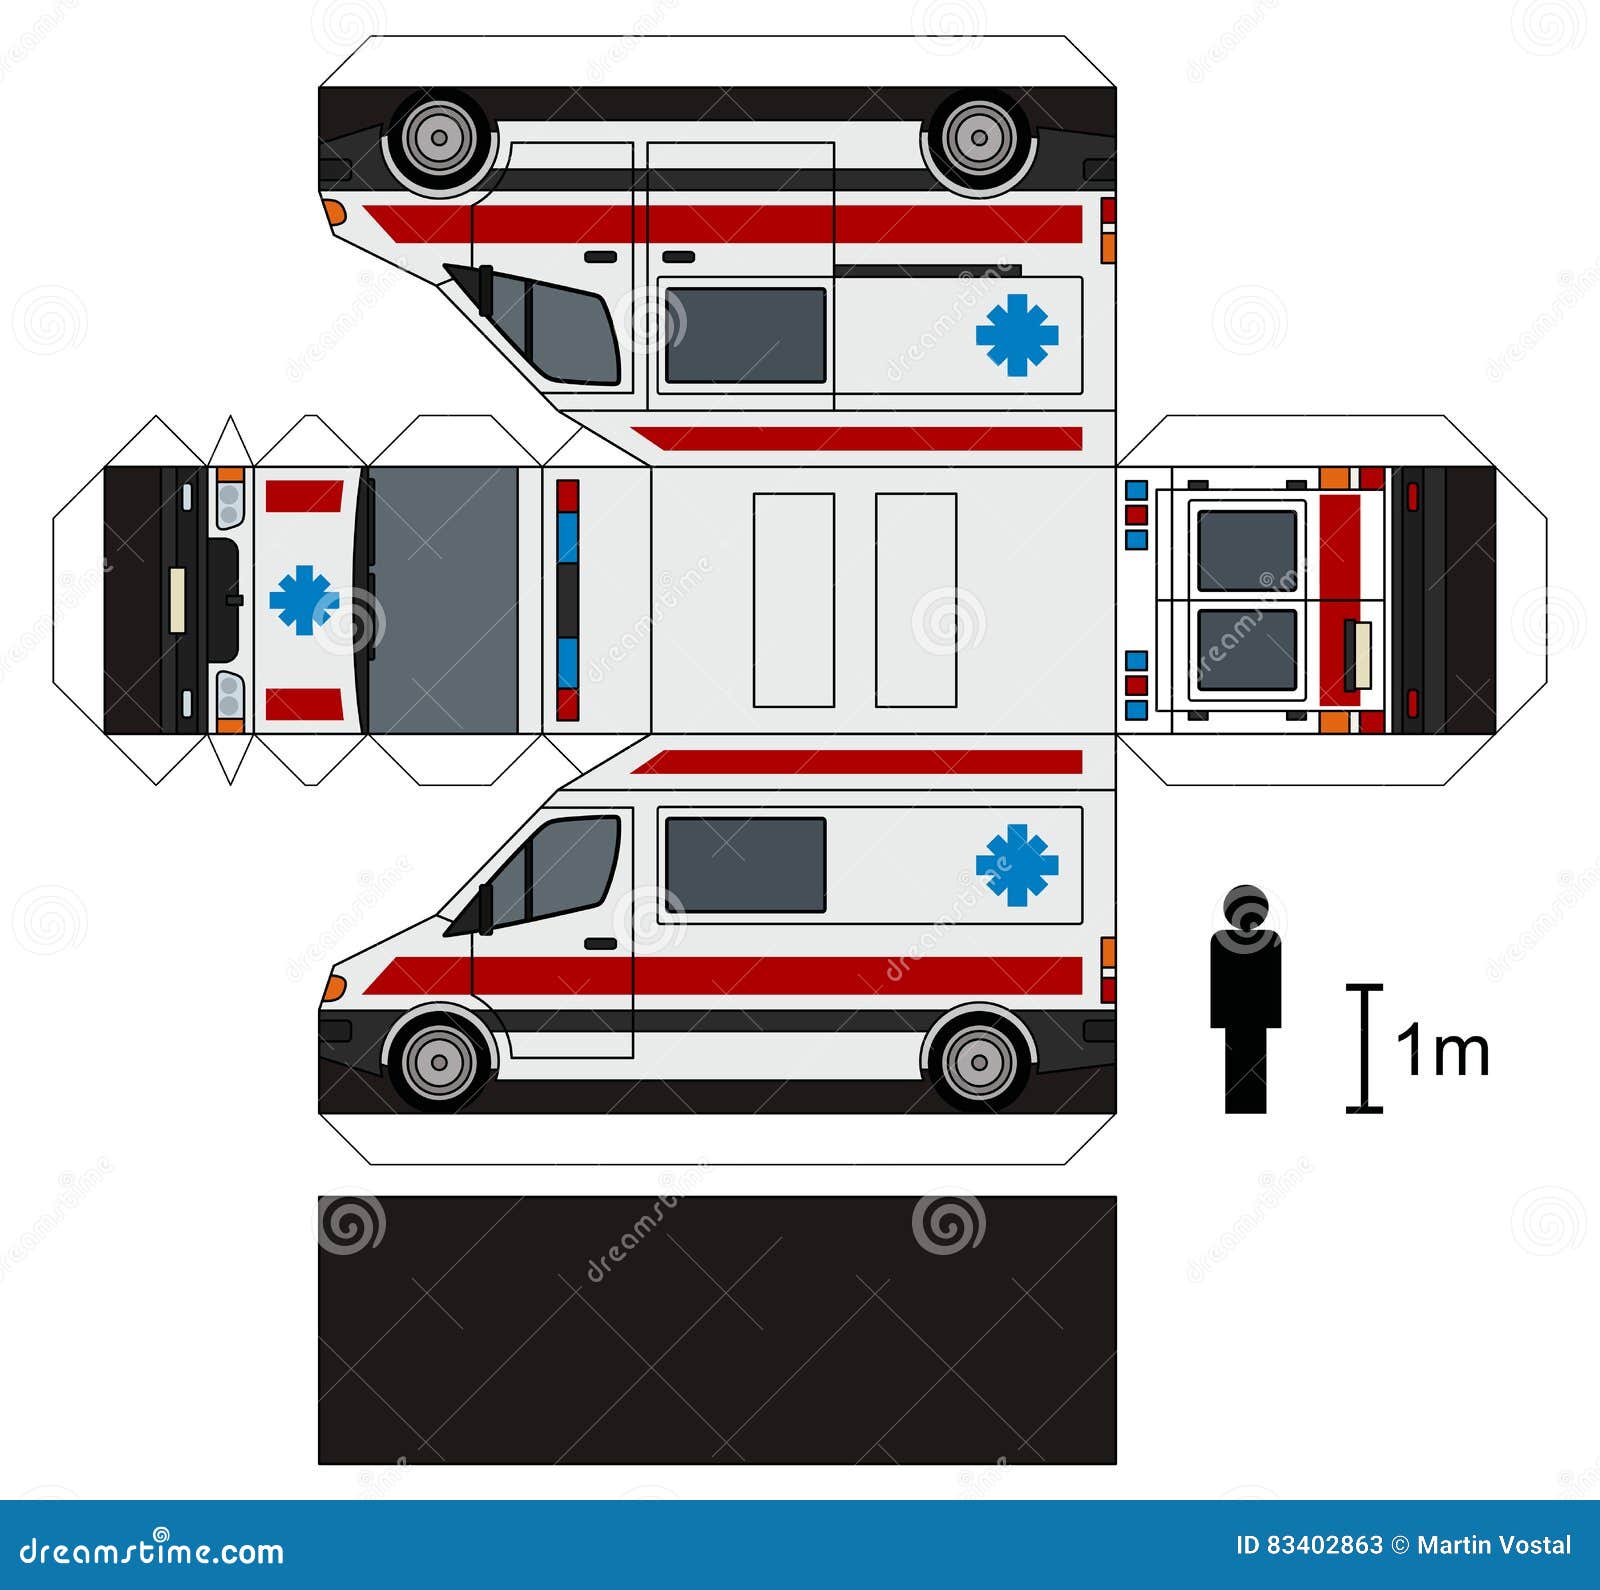 mod-le-de-papier-d-une-ambulance-illustration-de-vecteur-illustration